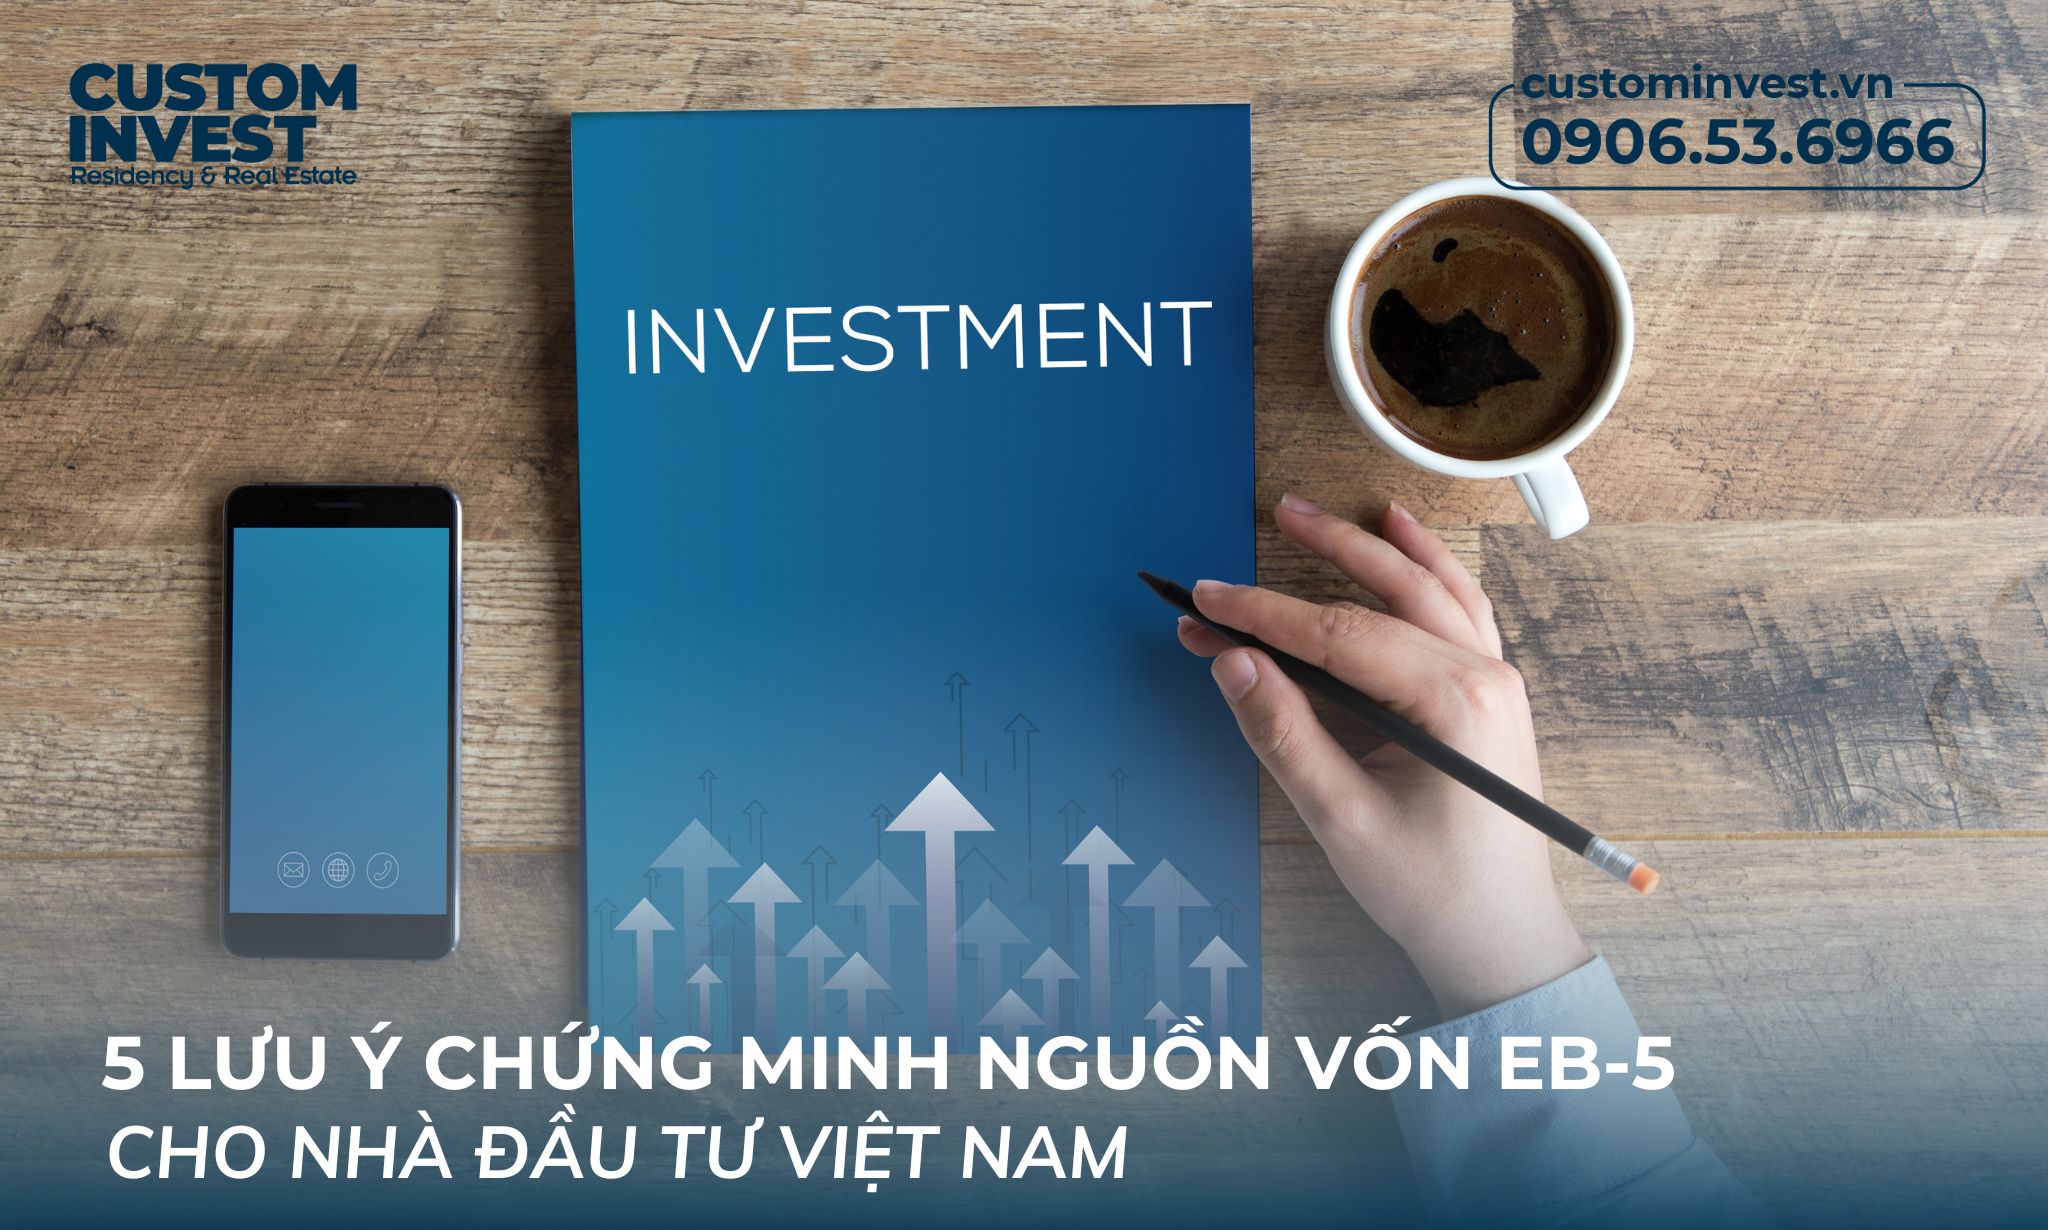 5 lưu ý chứng minh nguồn vốn EB-5 cho nhà đầu tư Việt Nam